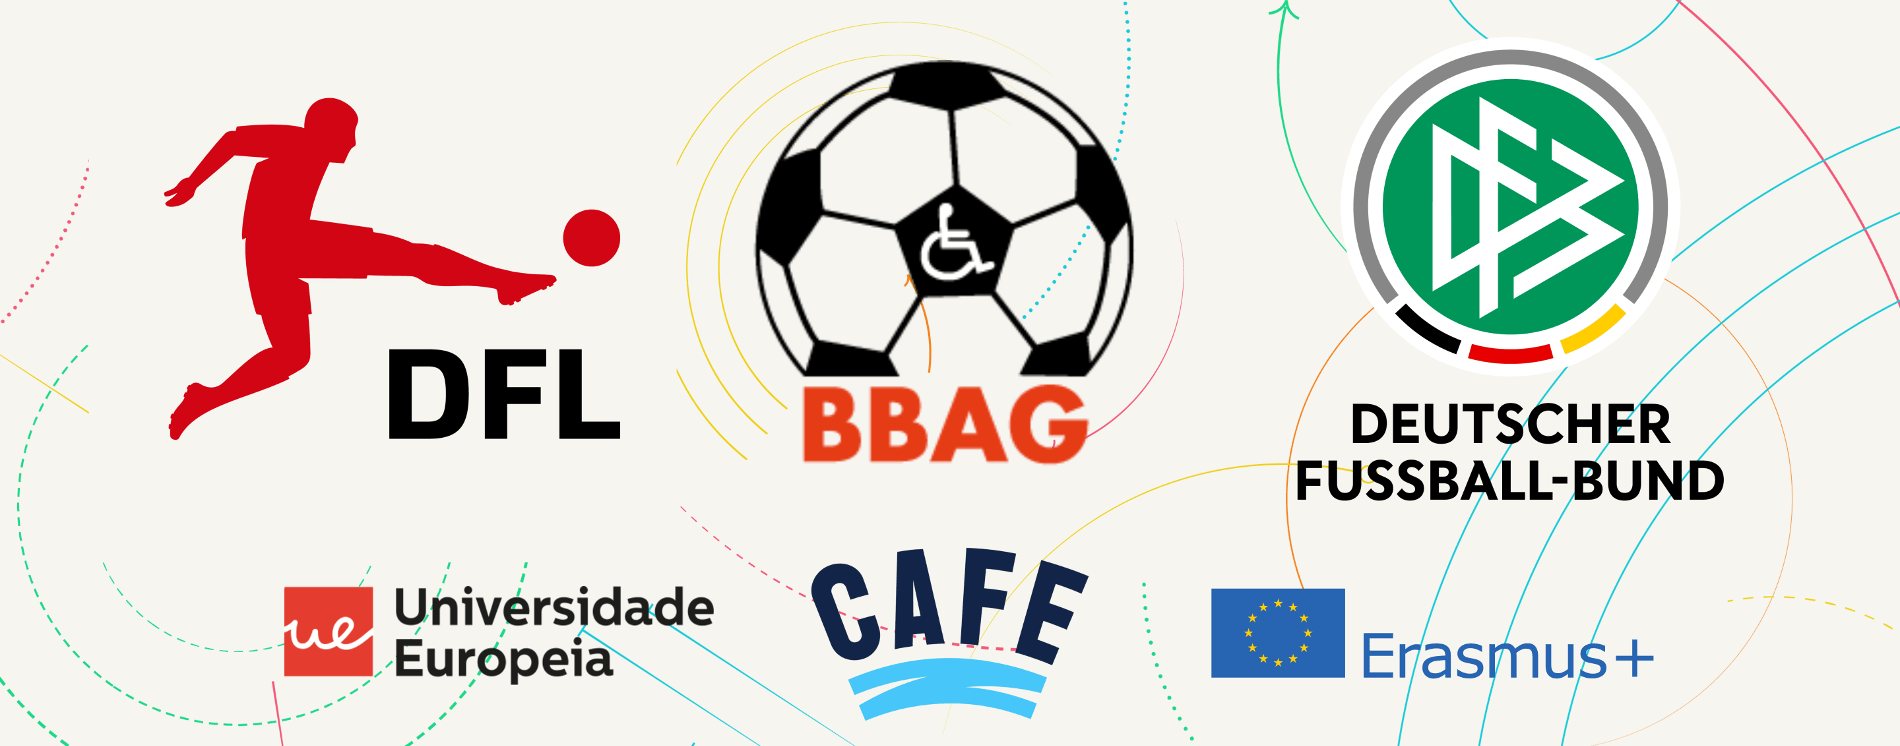 Grafik mit 6 Logos: Oben die Logos von DFL, BBAG und DFB. Darunter die Logos der Universidade Europeia sowie von CAFE und Erasmus+.“